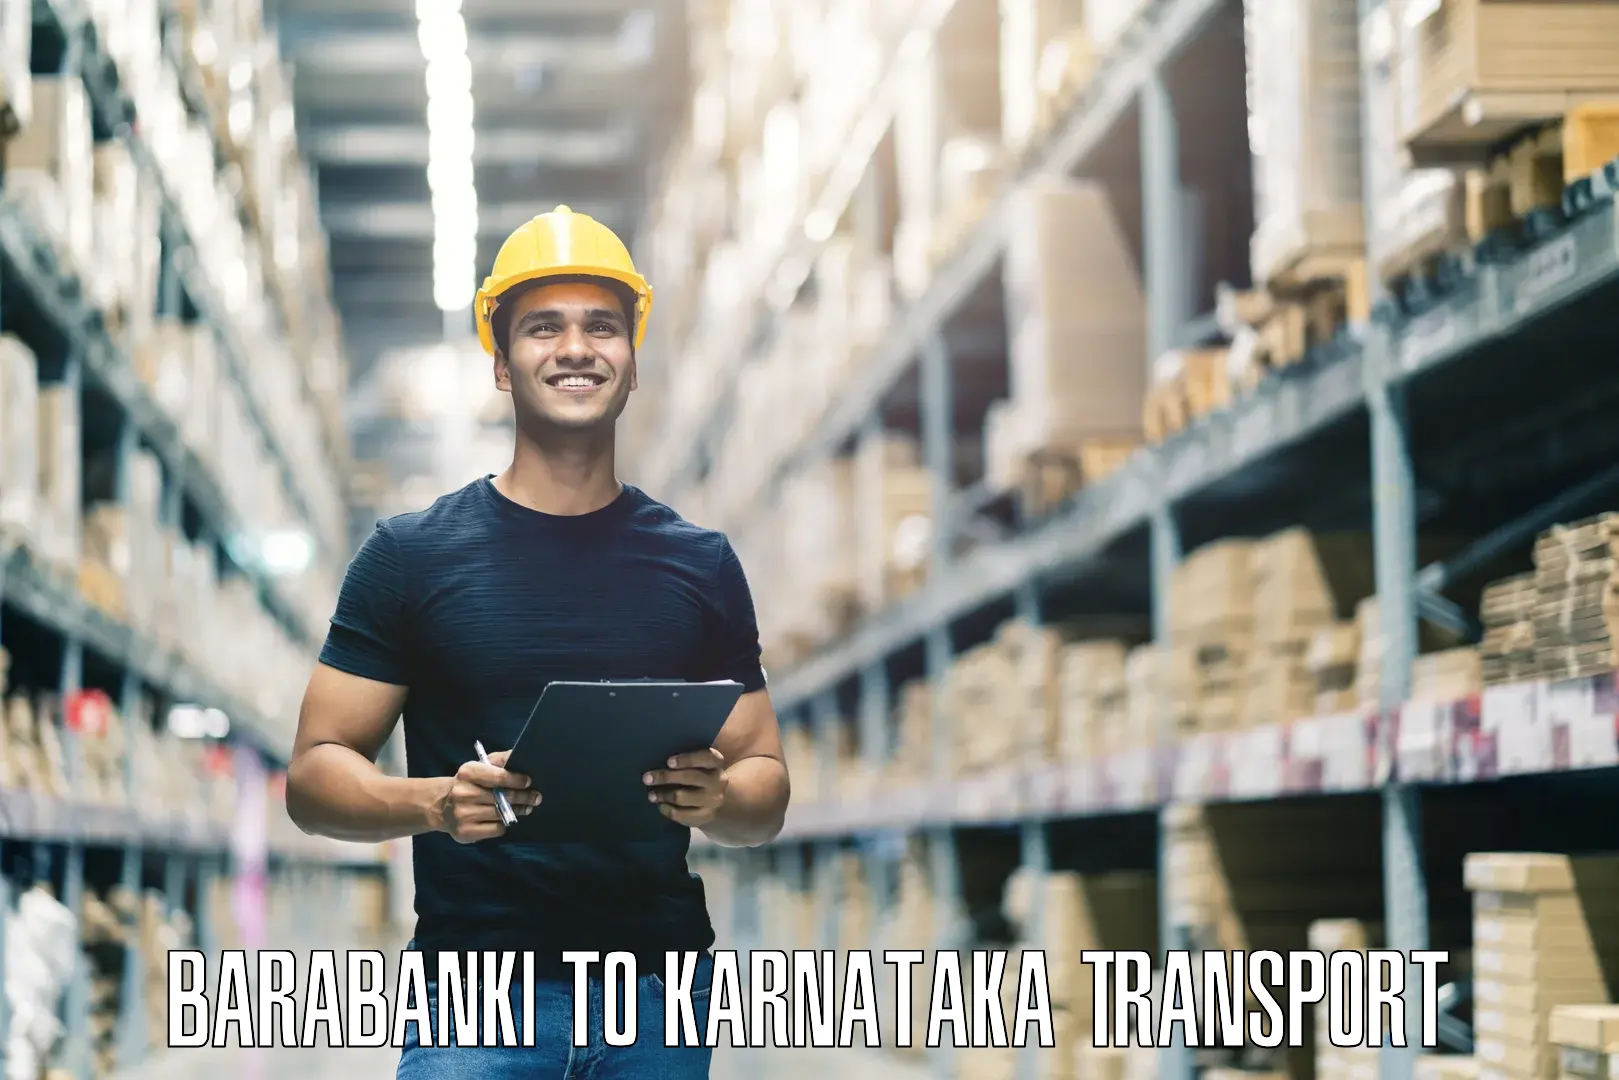 Nationwide transport services Barabanki to Bangalore